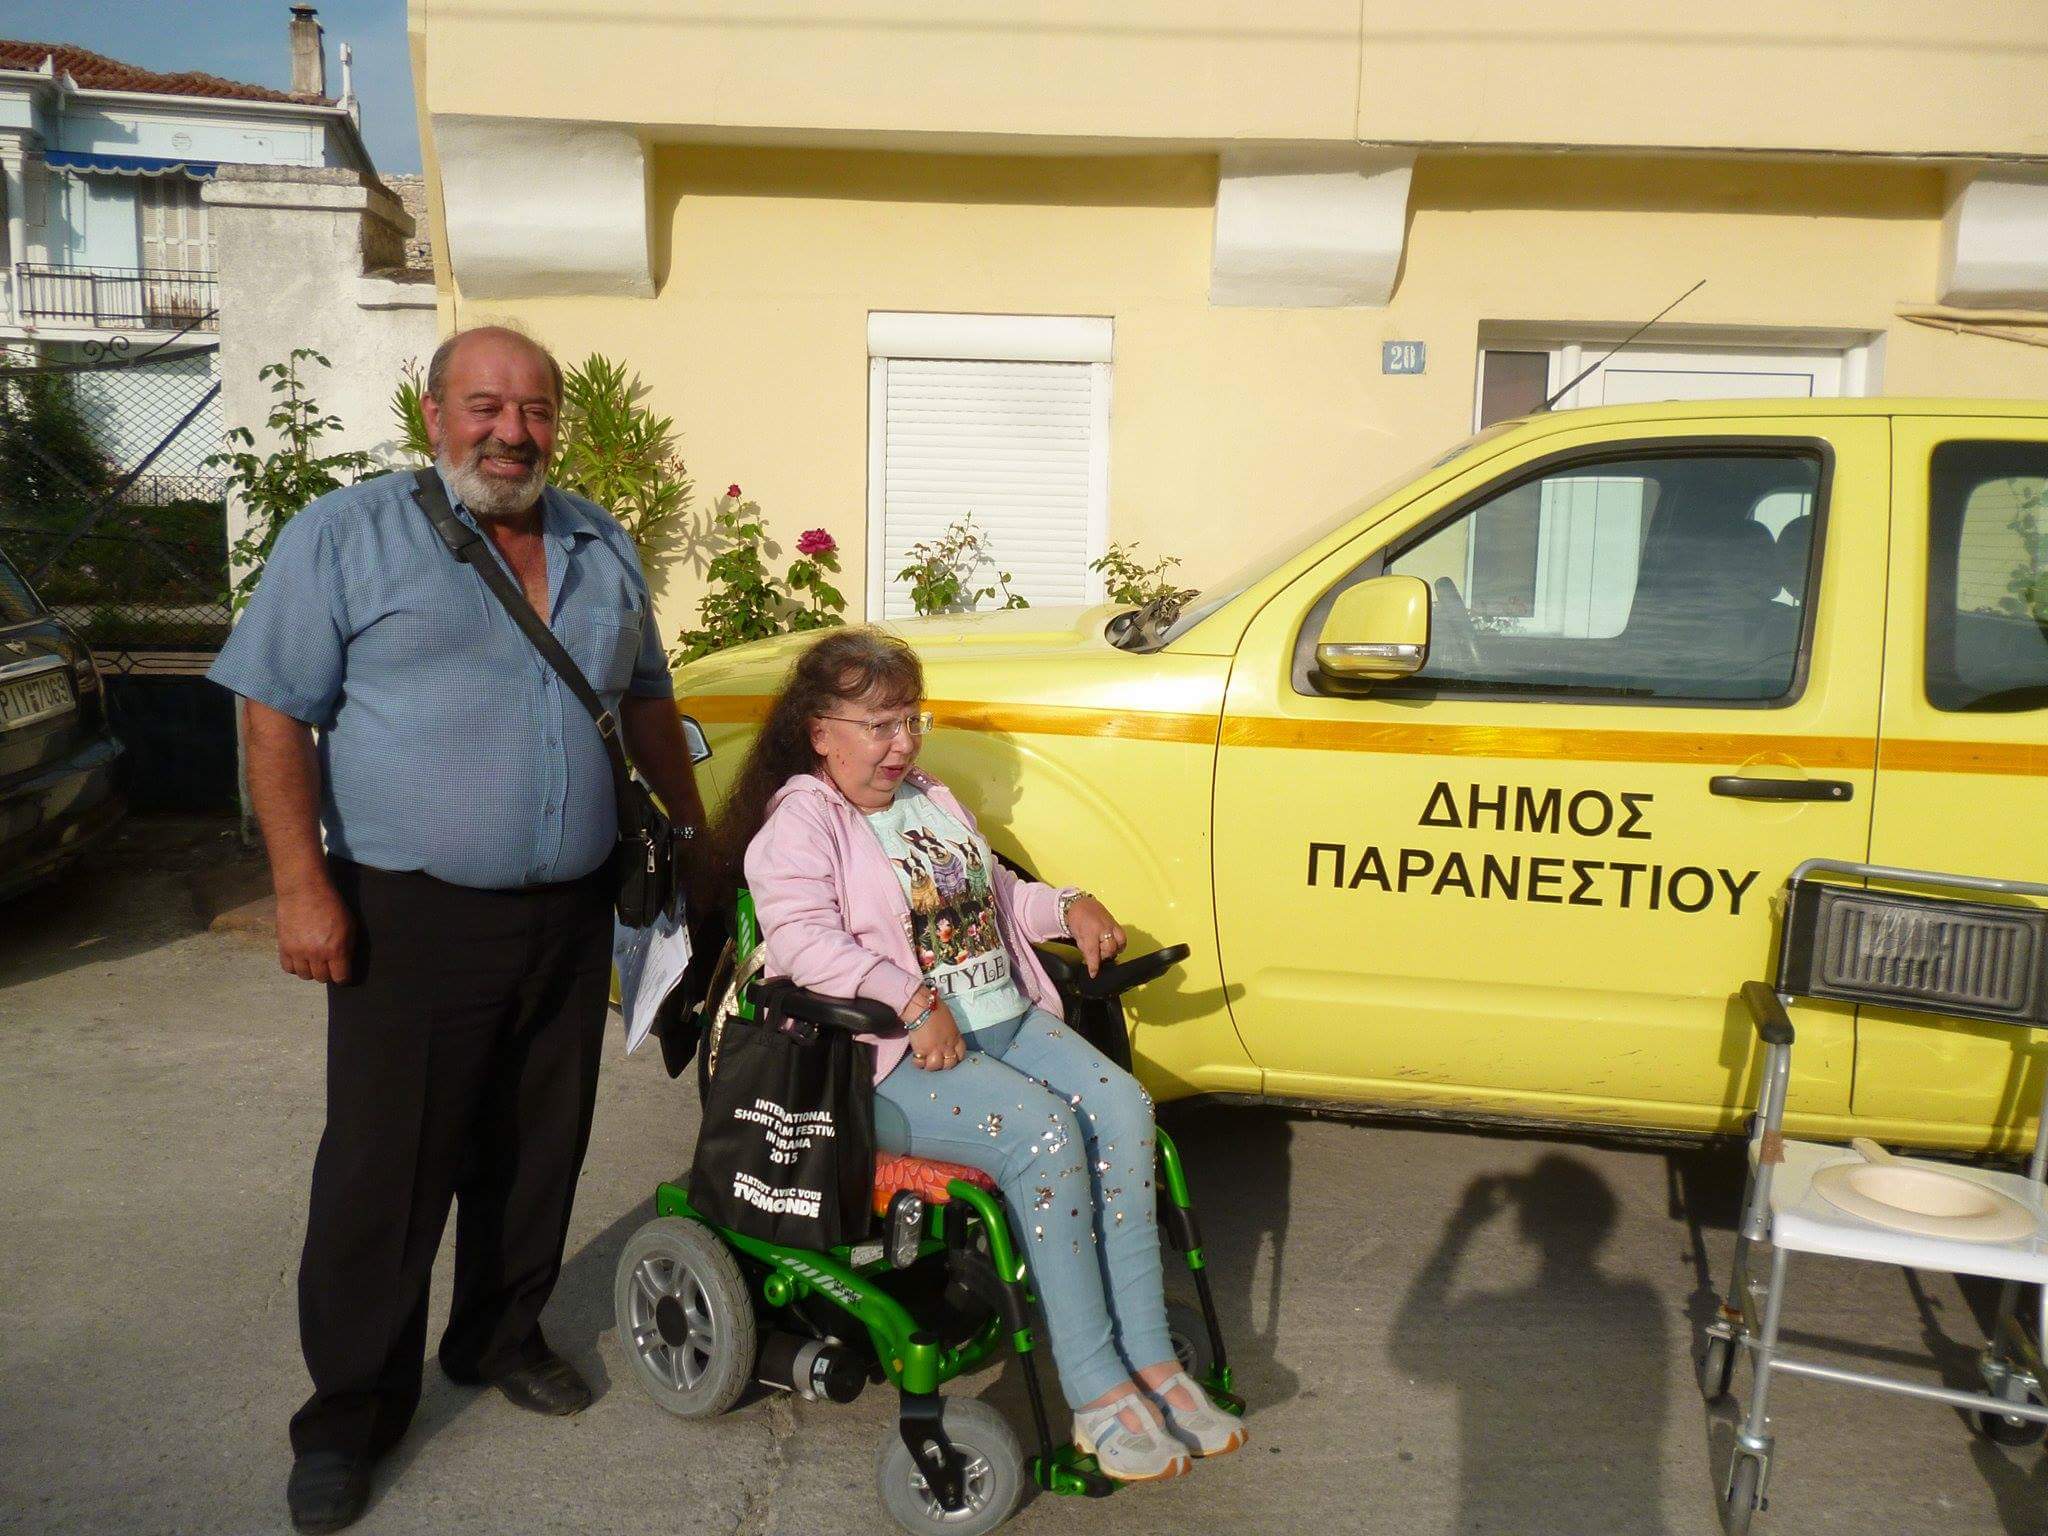 Δωρεά αναπηρικών αμαξιδίων στο Συλλογο παραπληγικών Δράμας